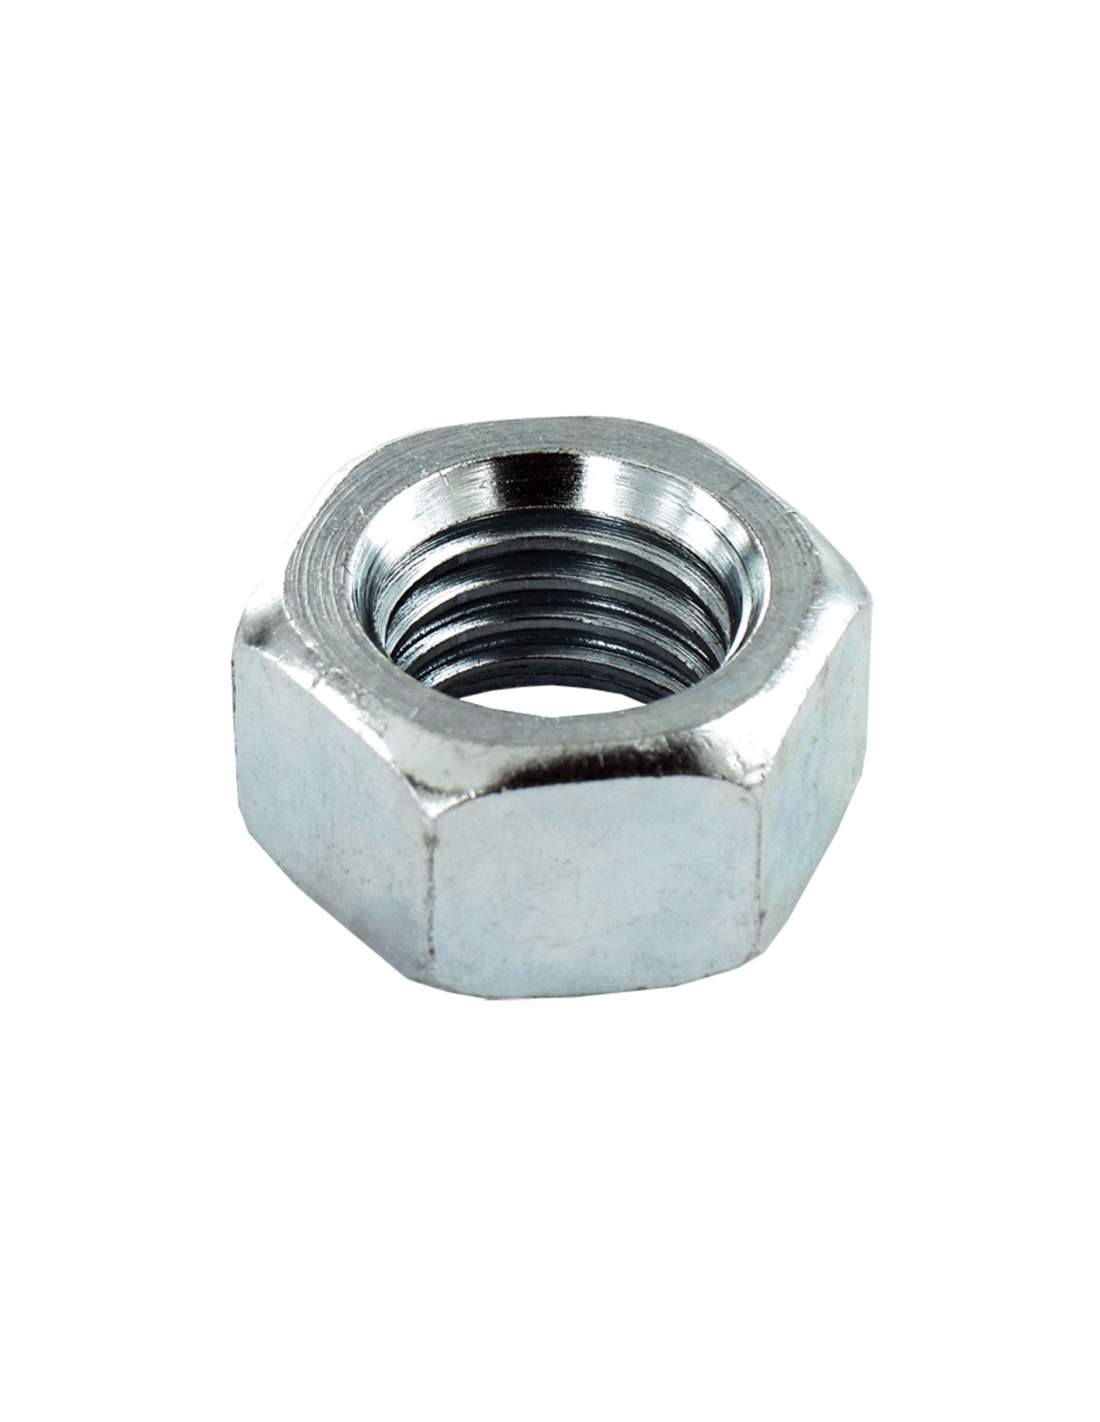 Dado esagonale in acciaio zincato, diametro 18 mm, 2 pezzi.